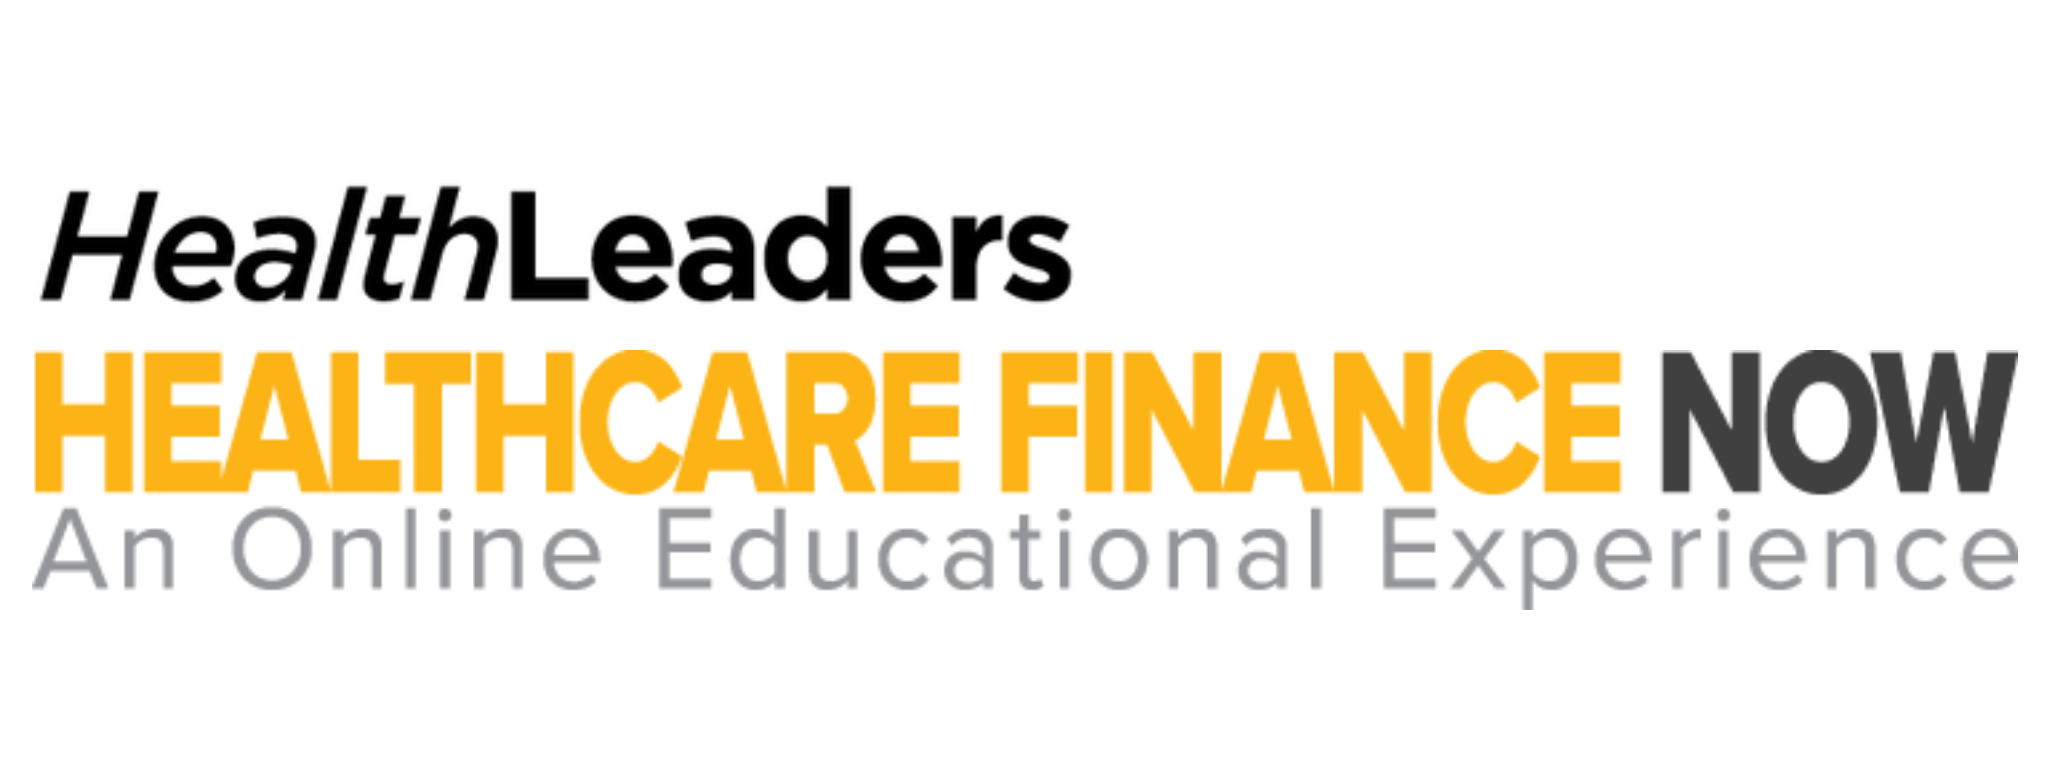 HealthLeaders Finance Cycle Online Summit logo